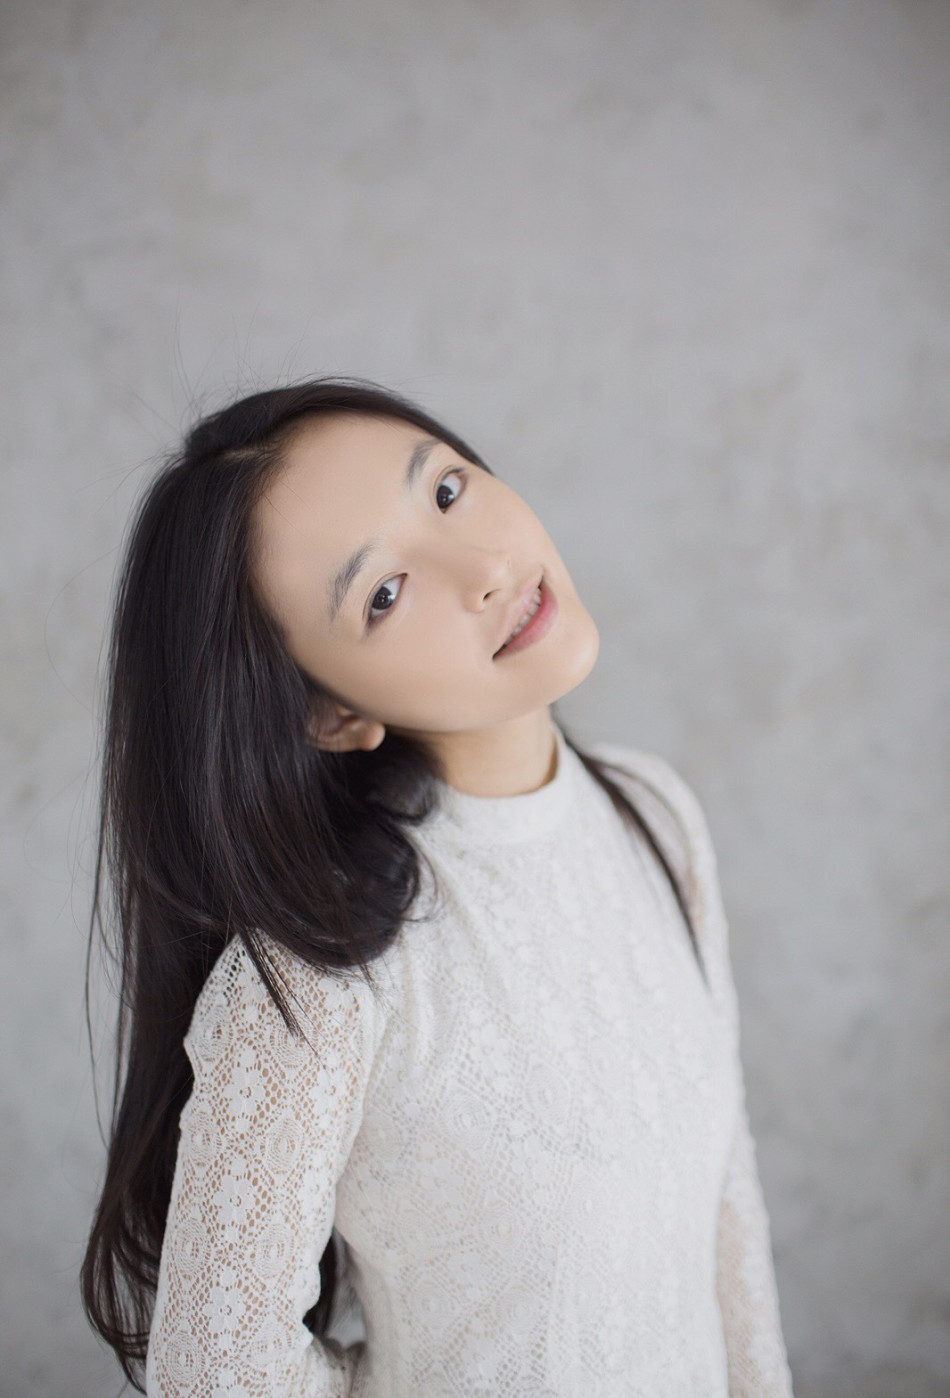 认识吴倩还是大学时刷人人,她发布了一组叫《深秋自high集》的照片,面